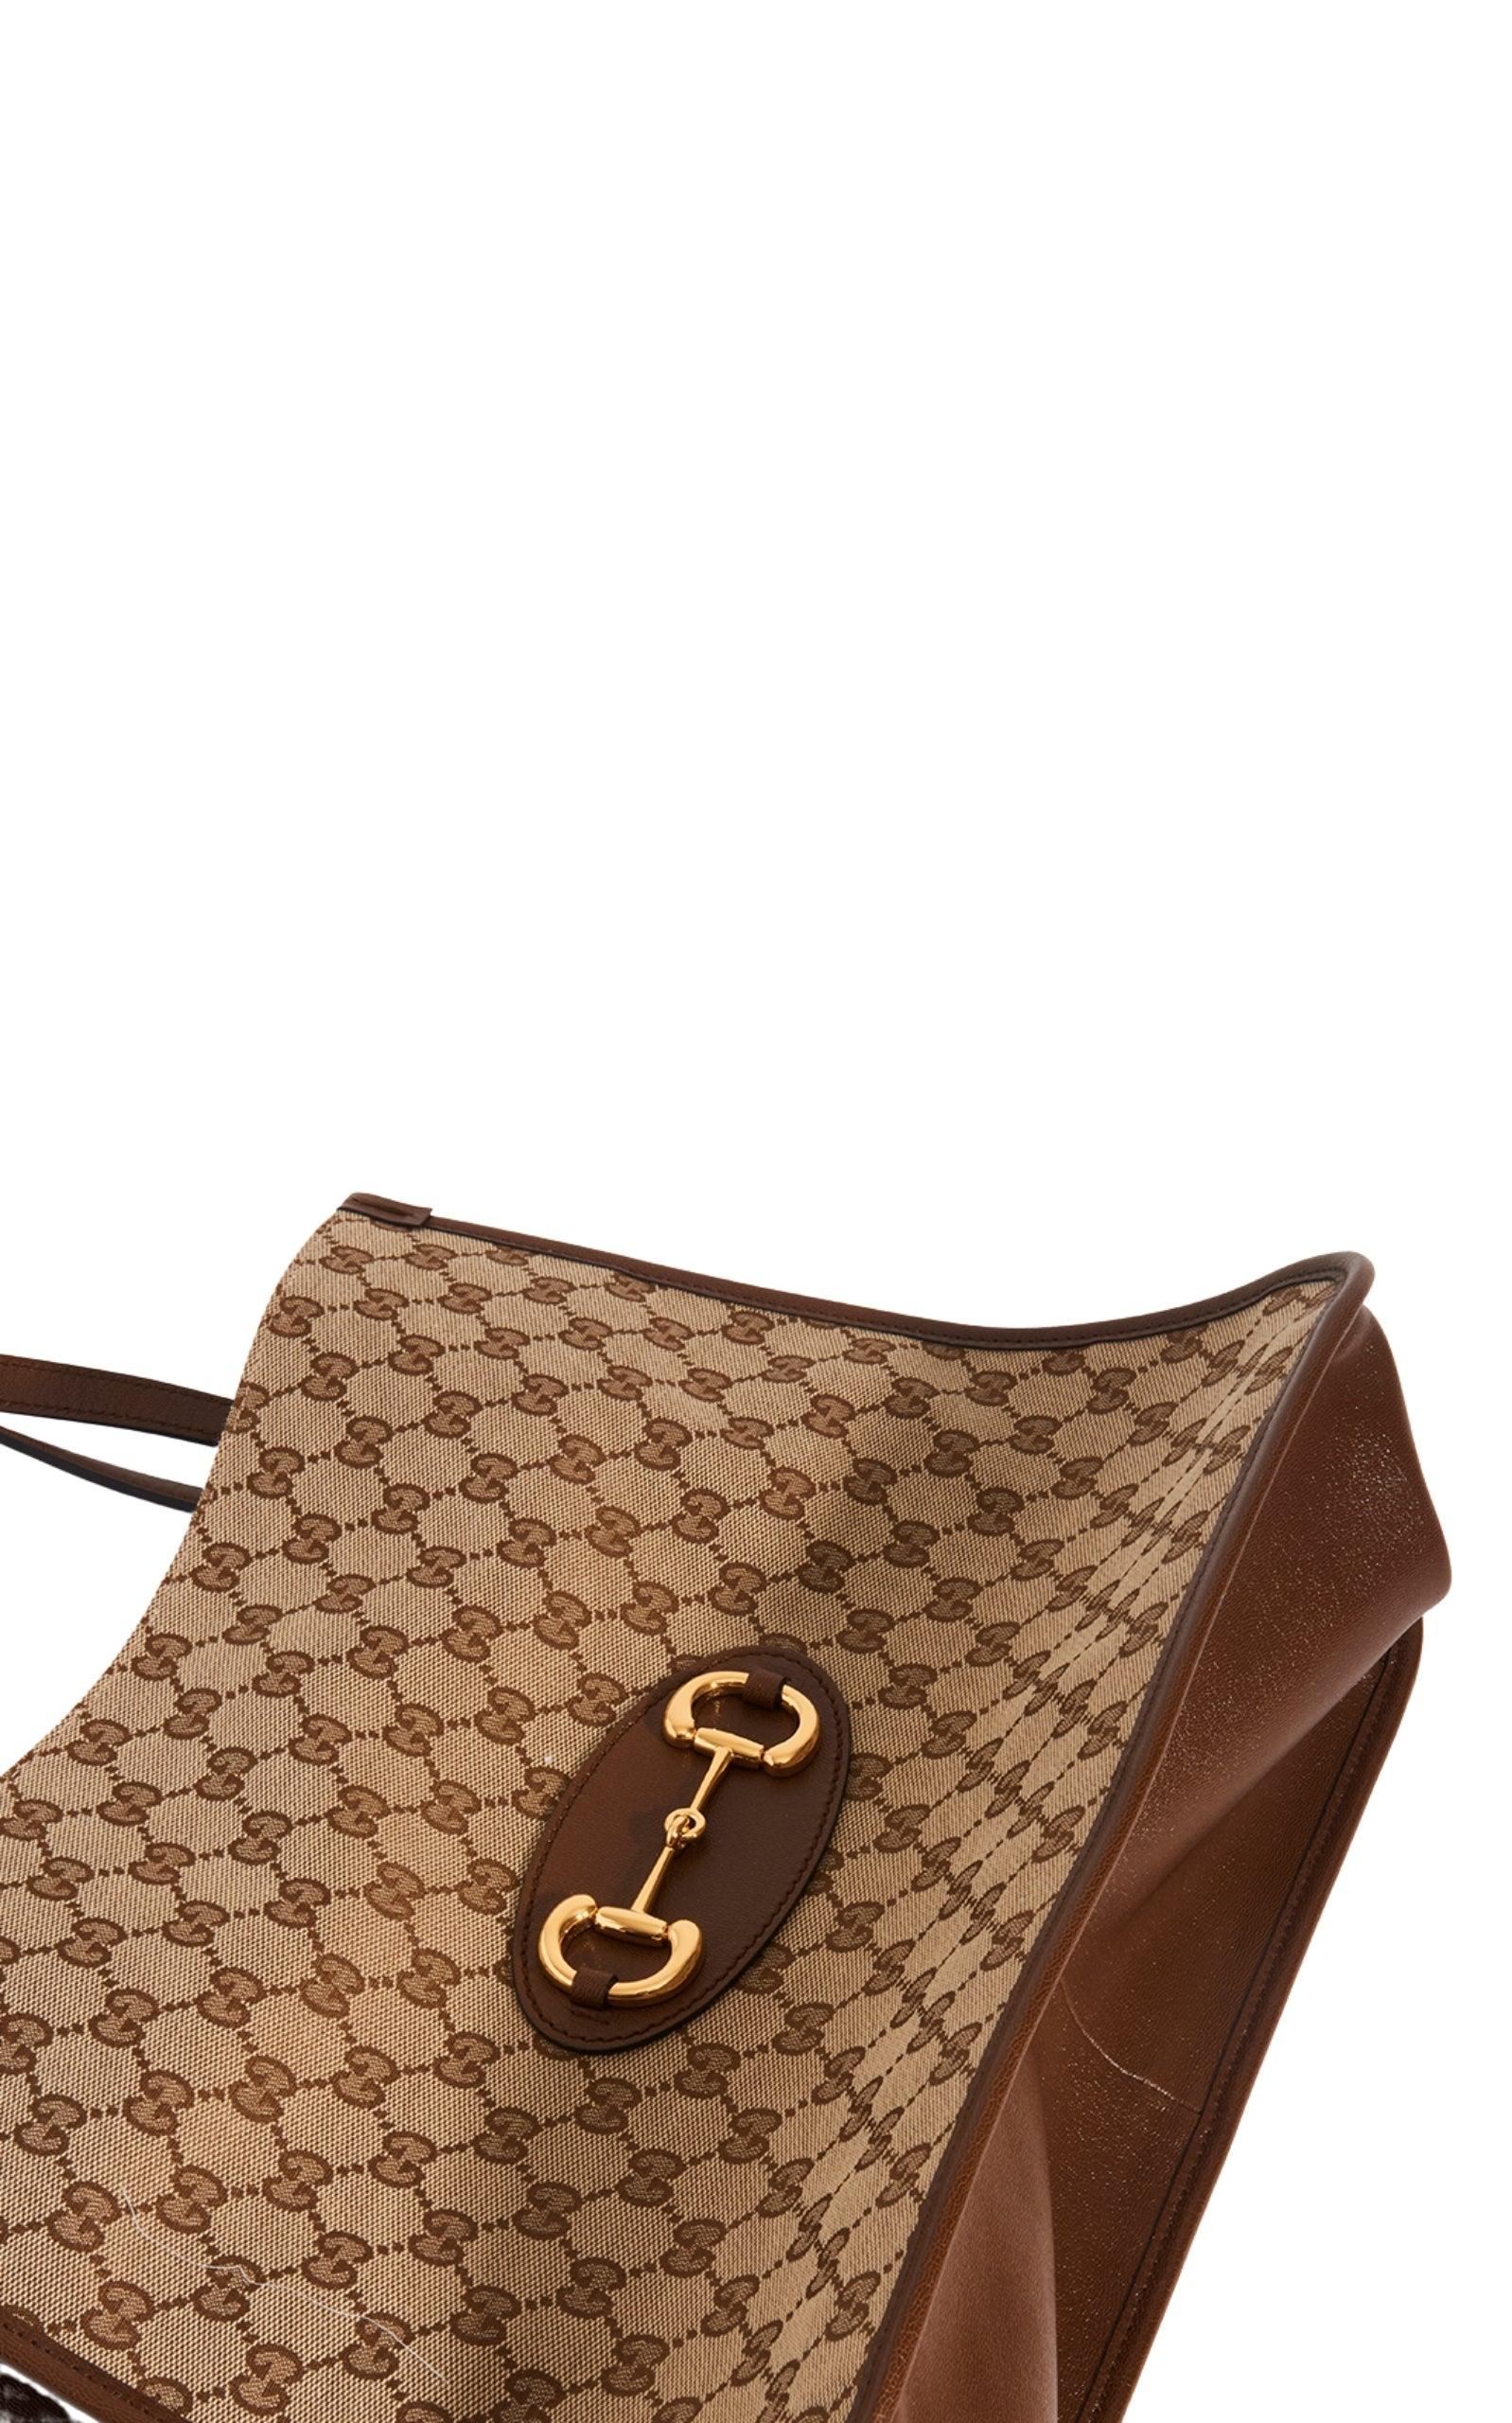 Horsebit 1955 cloth handbag Gucci Brown in Cloth - 36334264